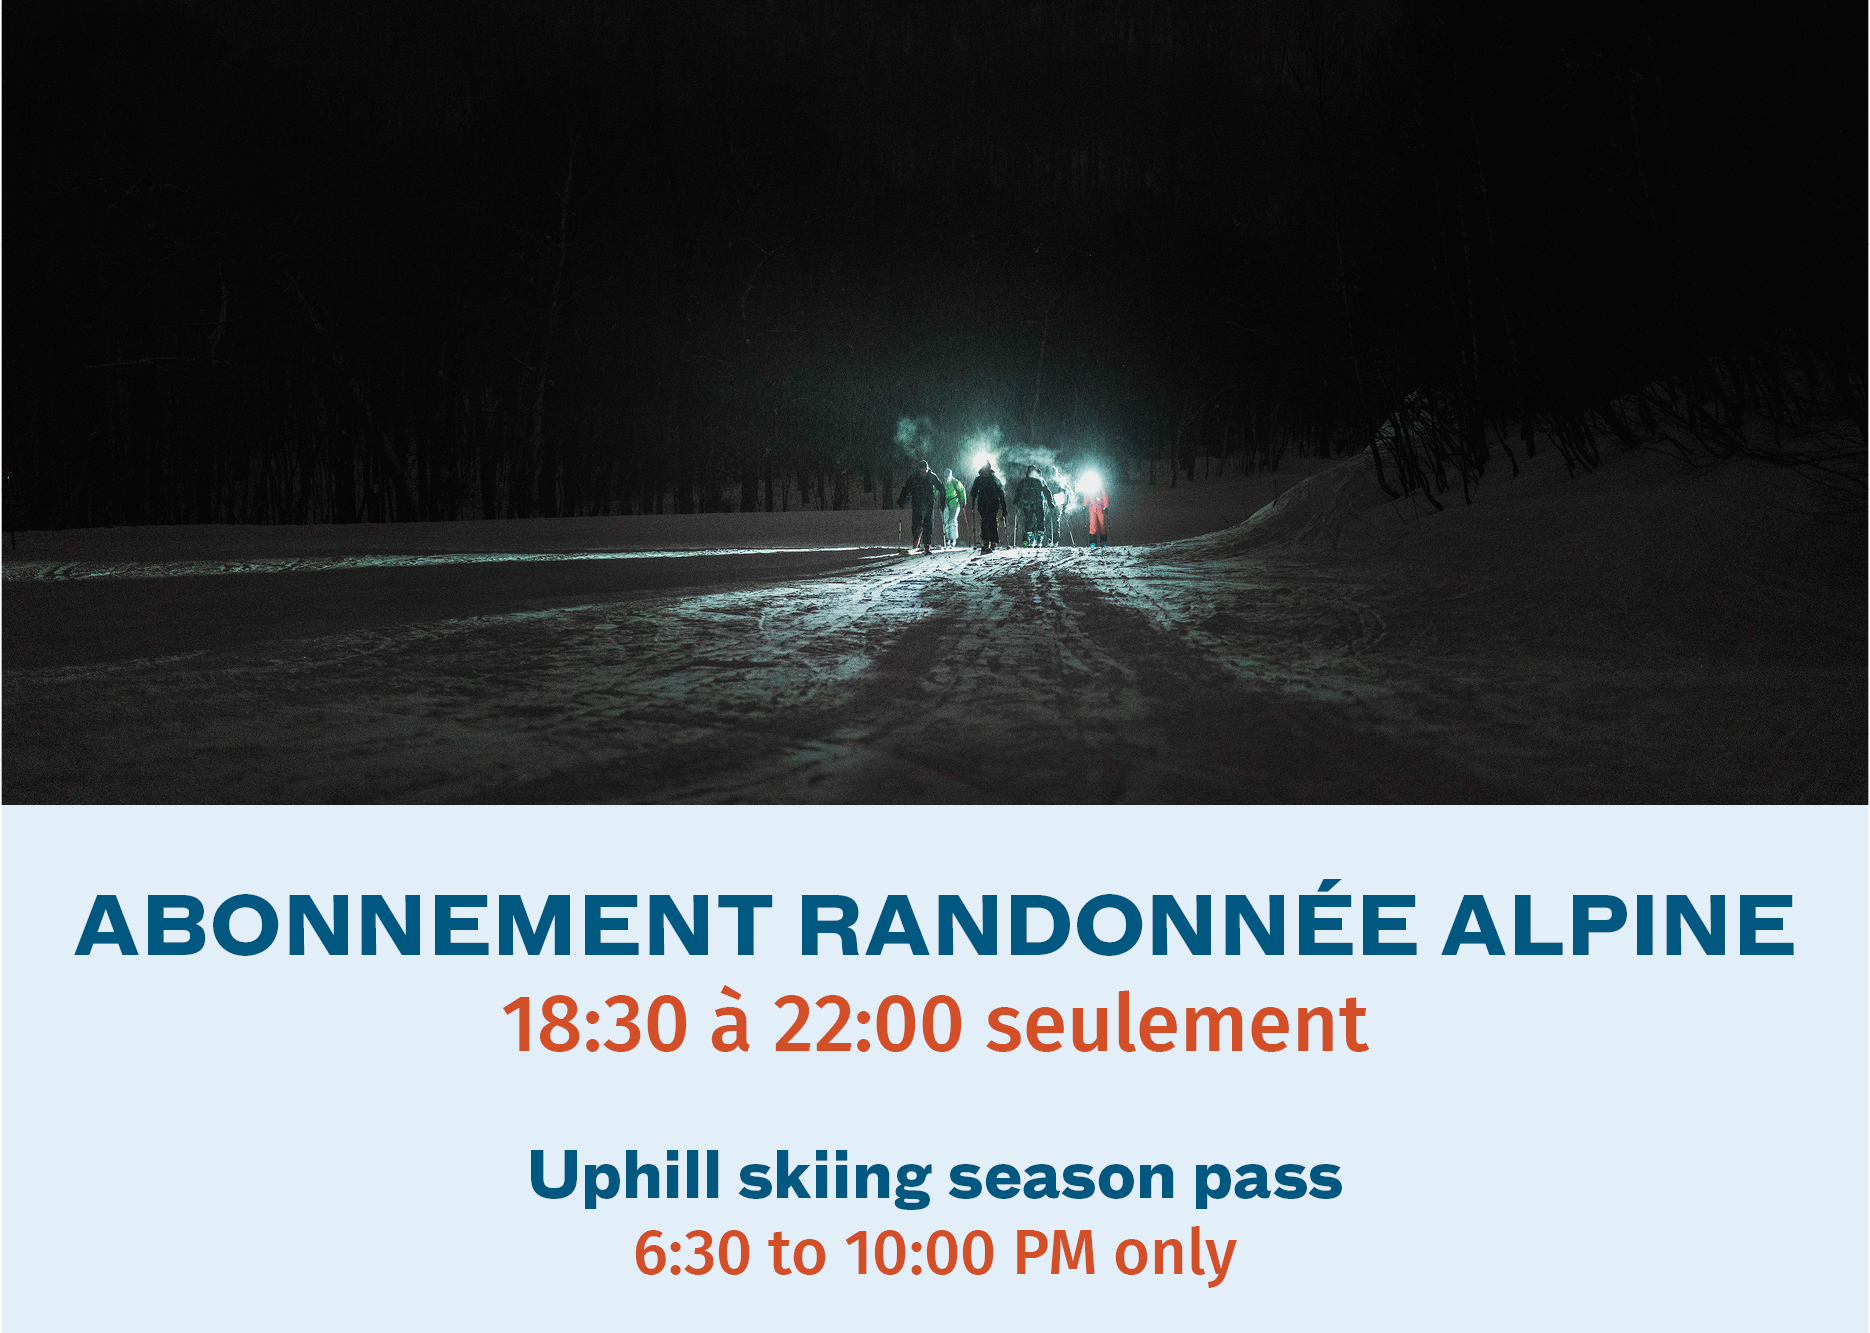 Uphill skiing season pass 6:30-10:00 PM